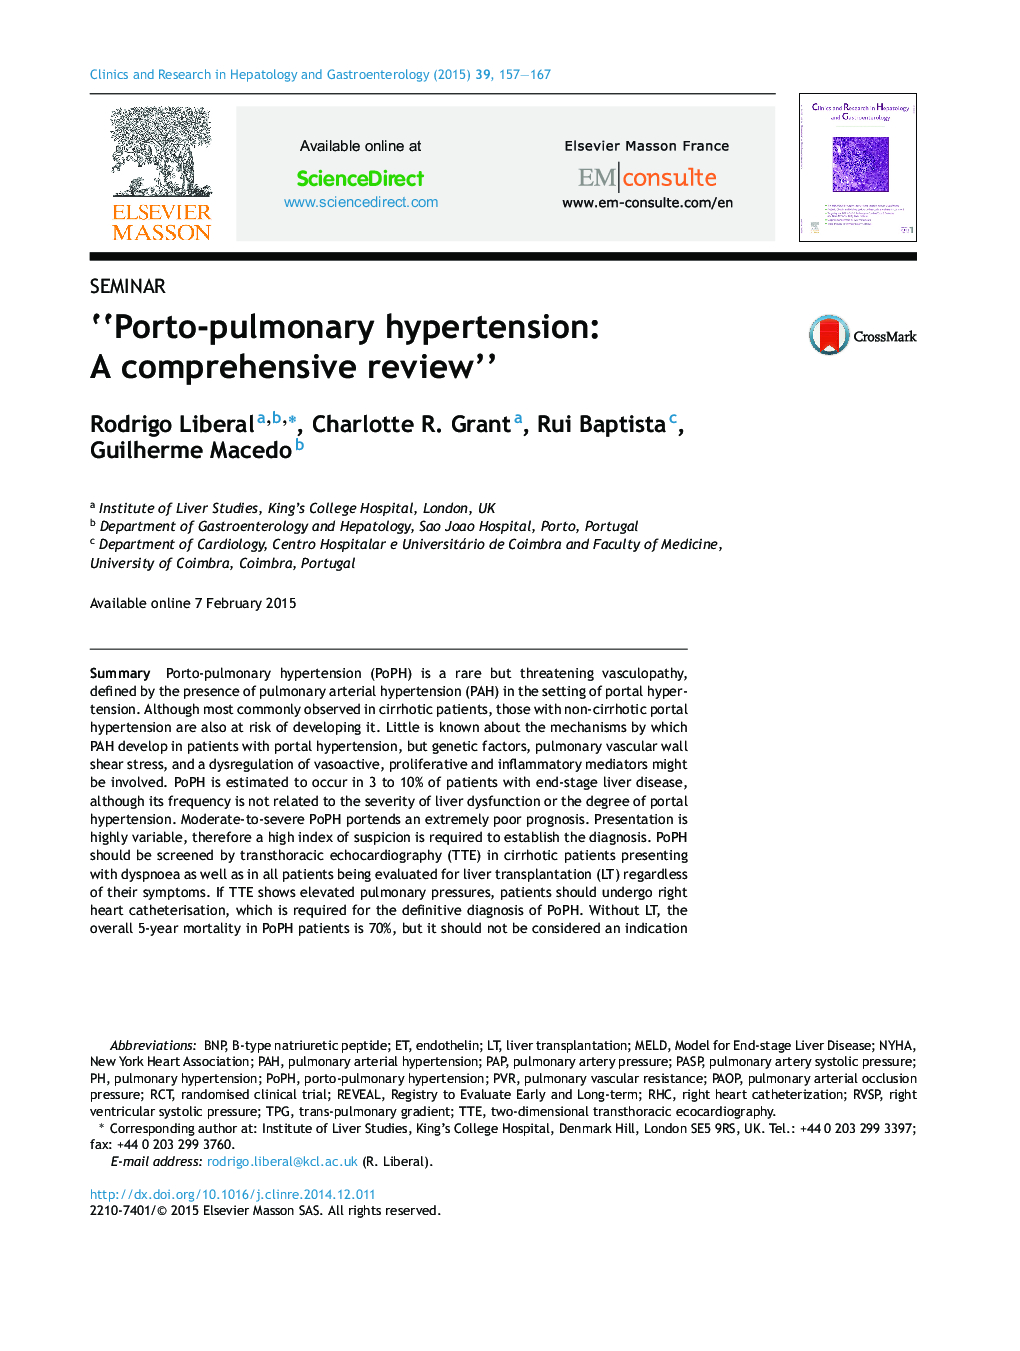 “Porto-pulmonary hypertension: A comprehensive review”